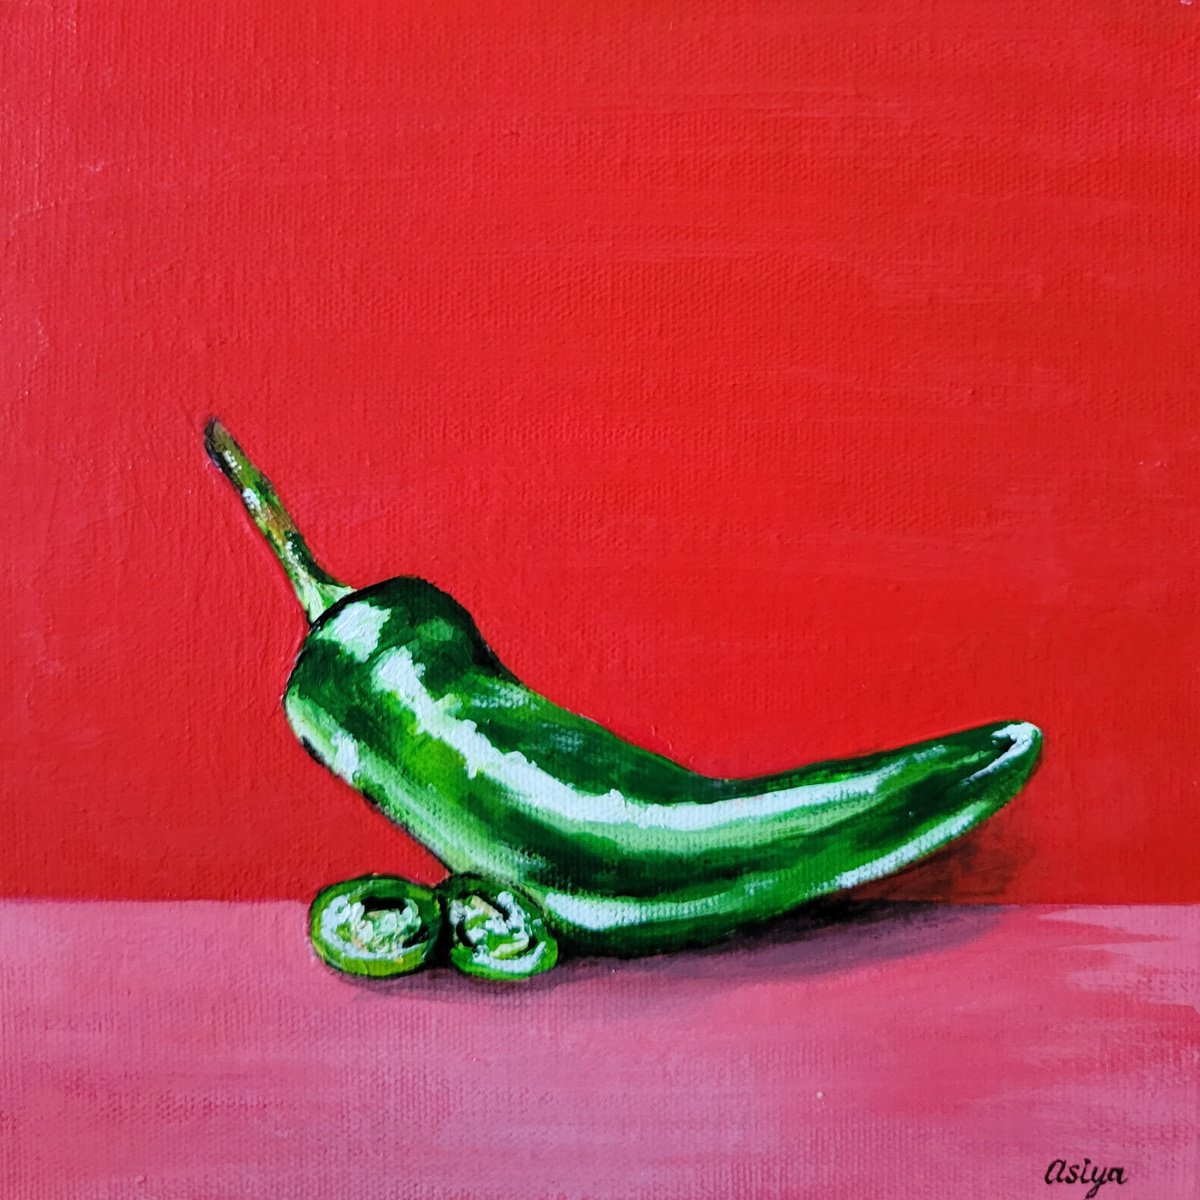 Serrano Pepper by Asiya Nouretdinova